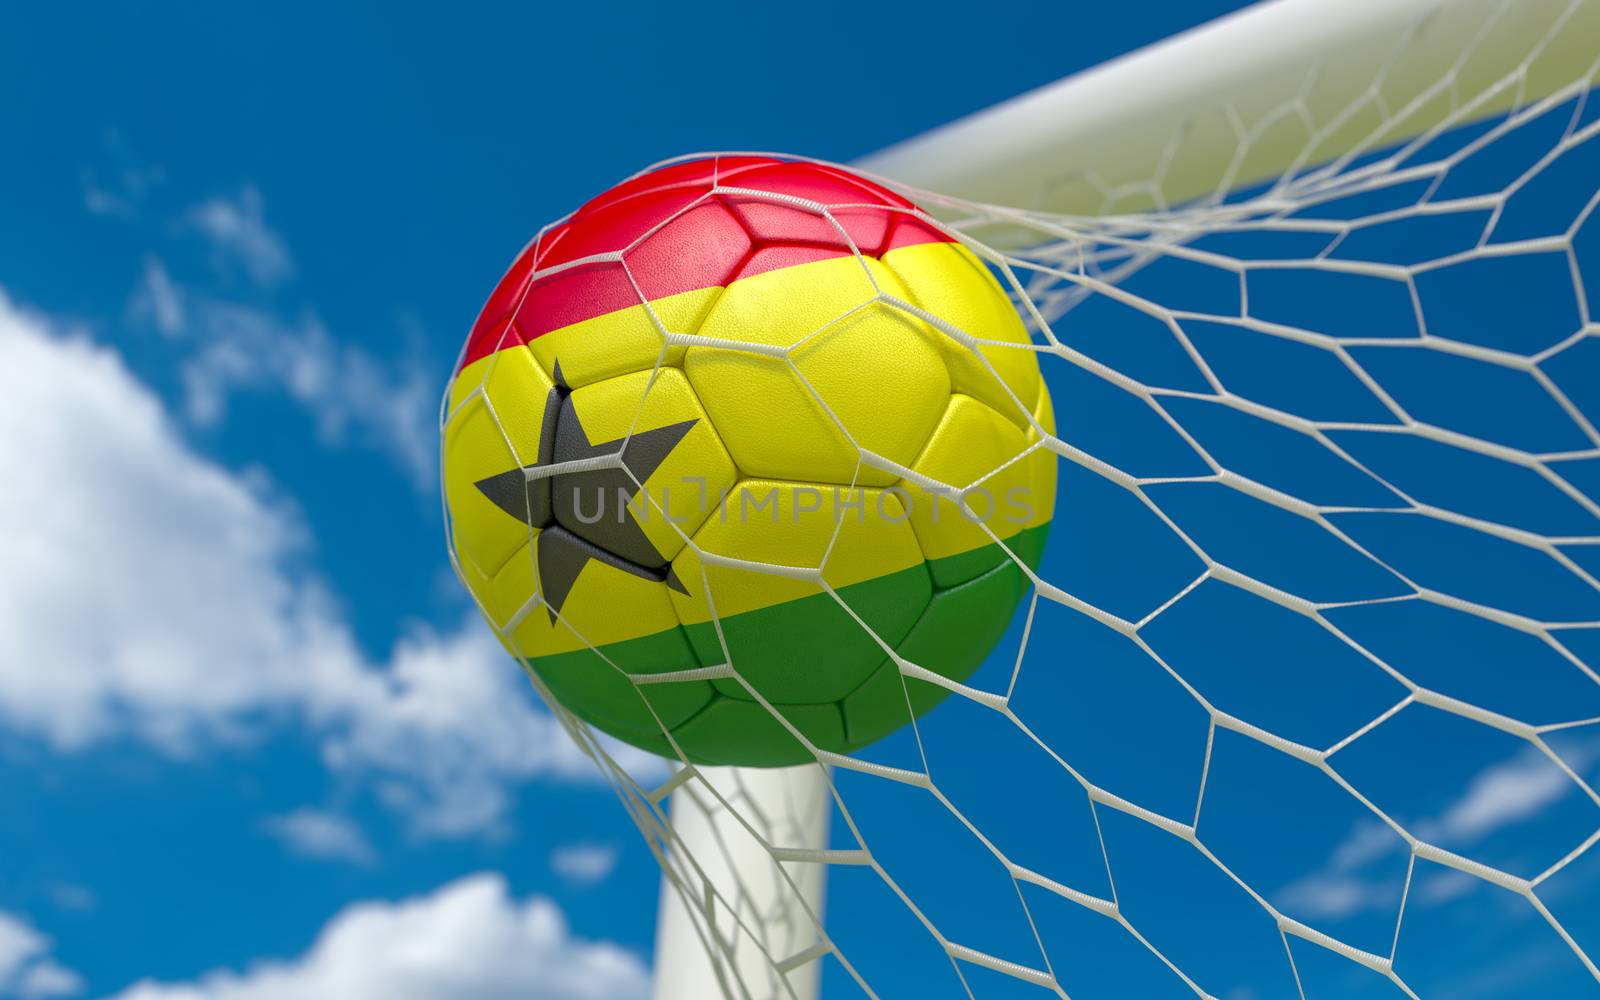 Ghana flag and soccer ball, football in goal net